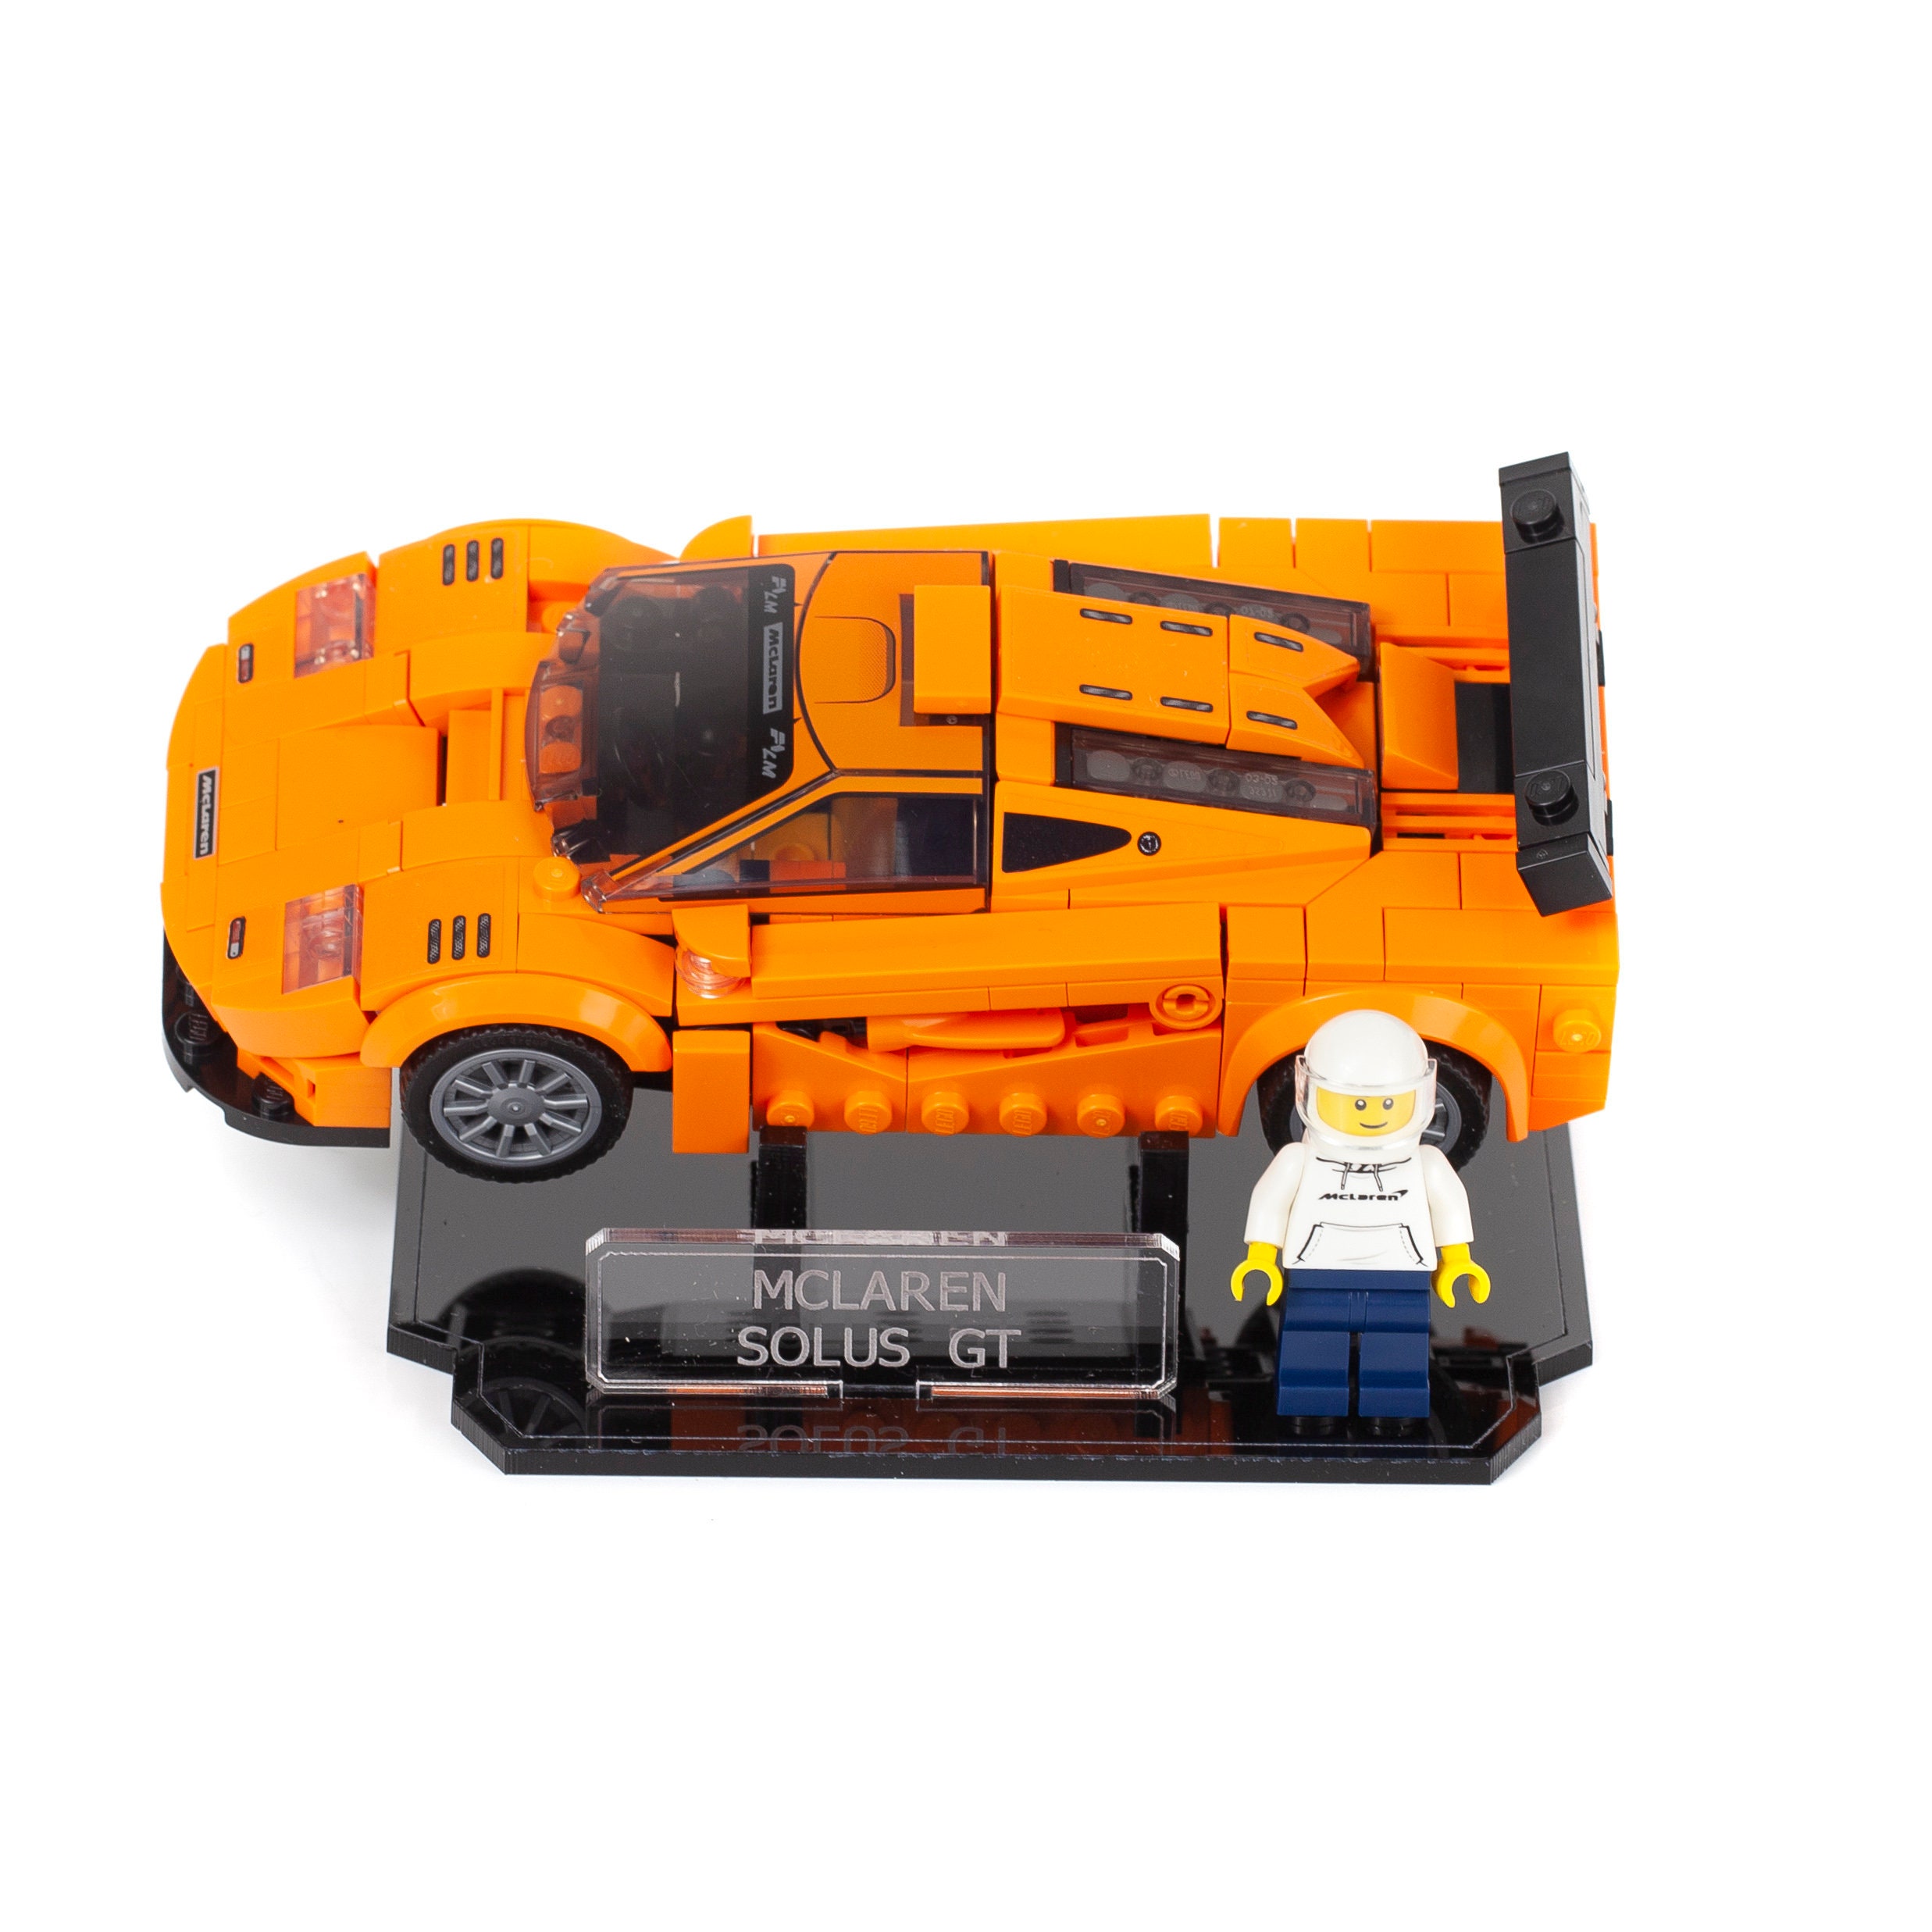 Les avis sont partagés sur l'exposition Fast & Furious au LEGO Store